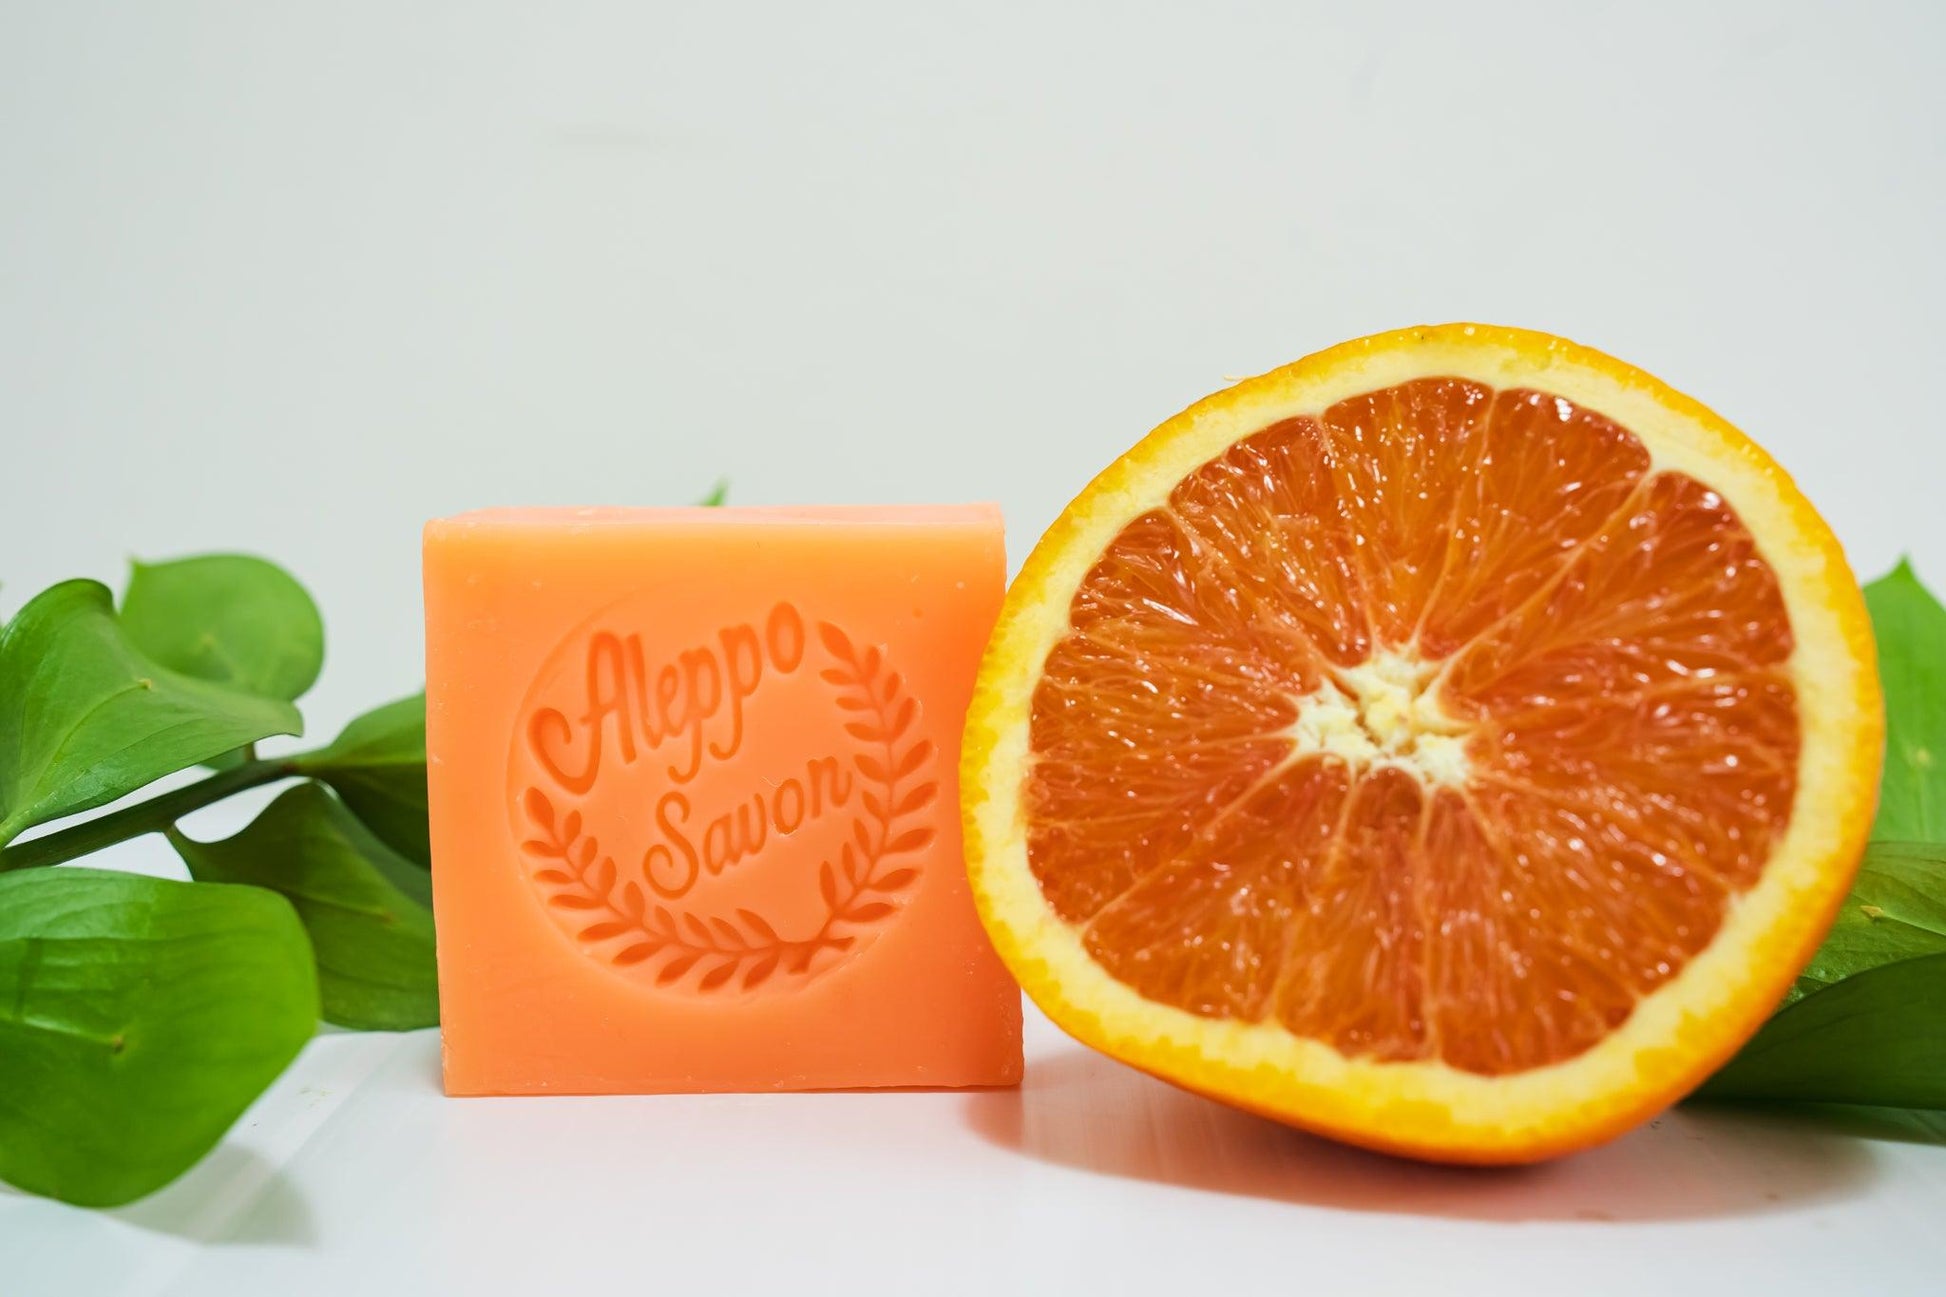 Aleppo Soap Orange - Alepposavon